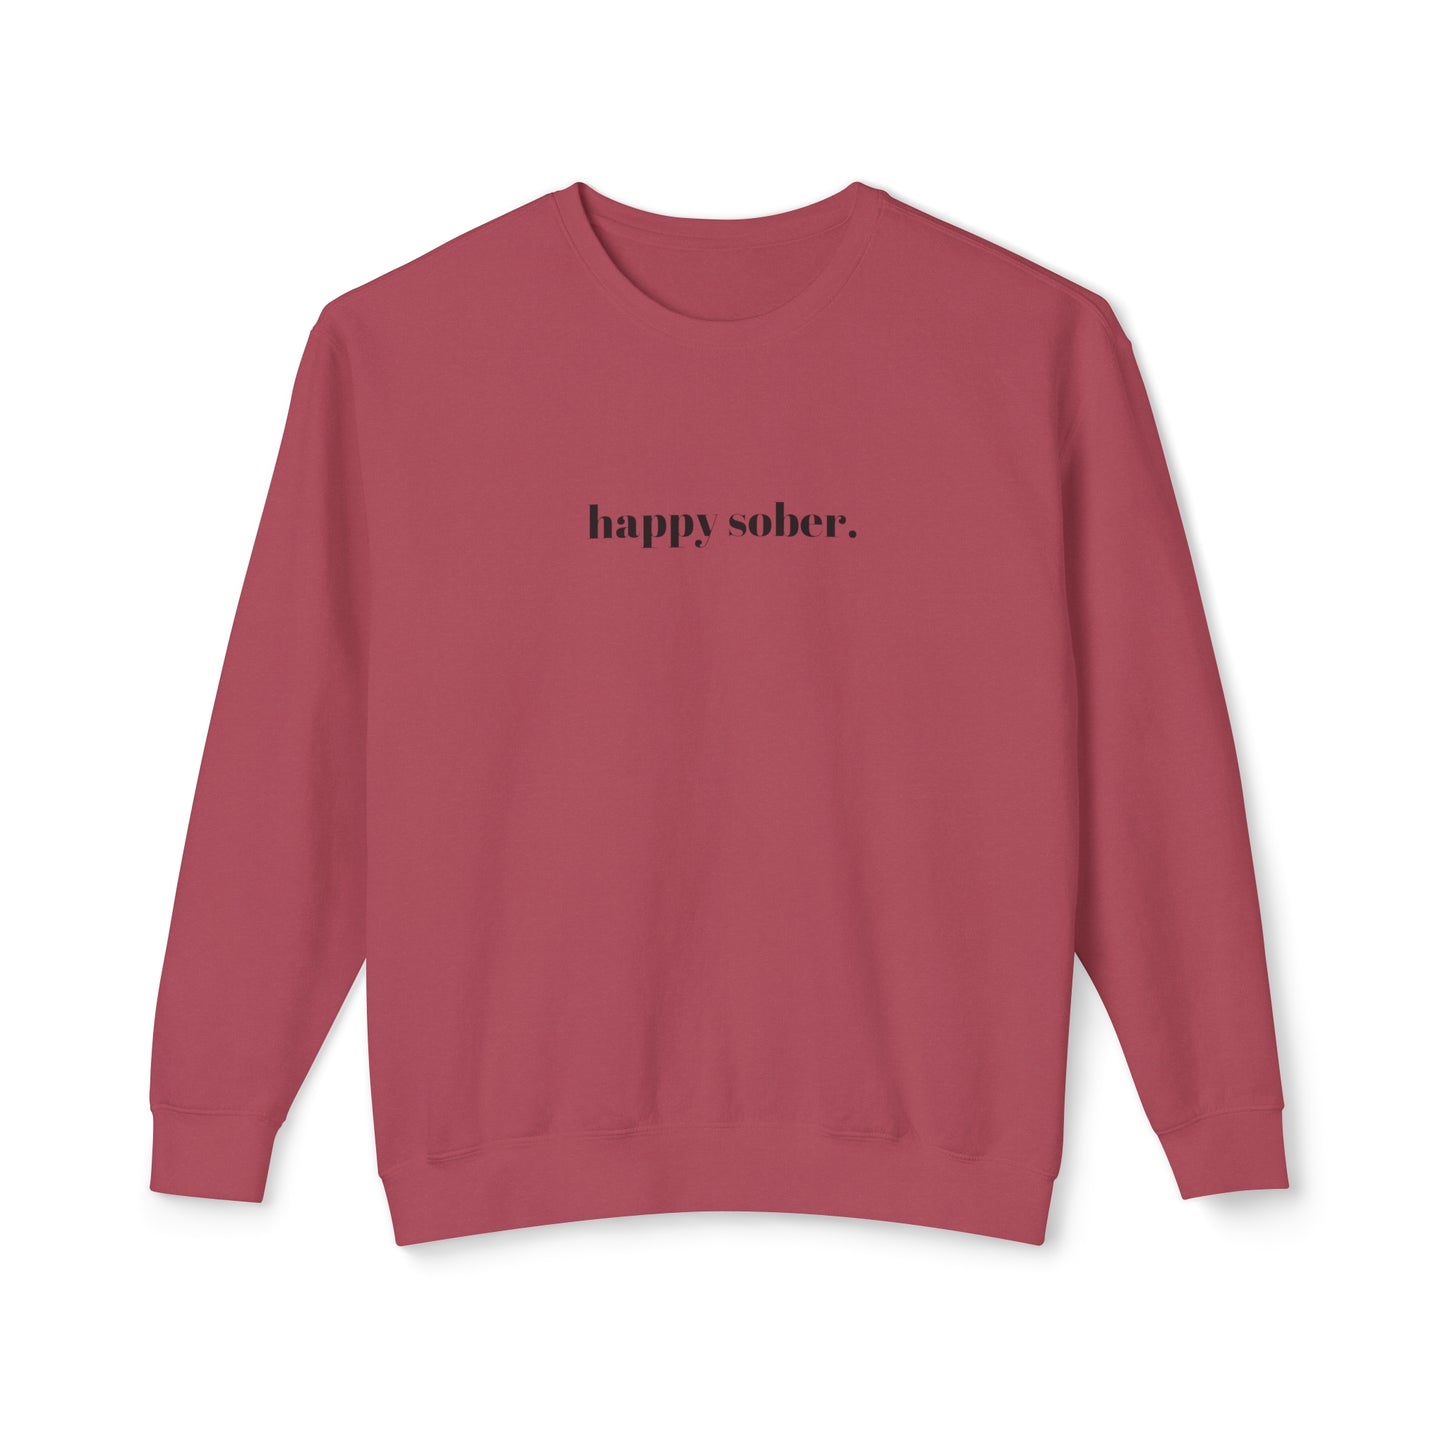 happy sober sweatshirt